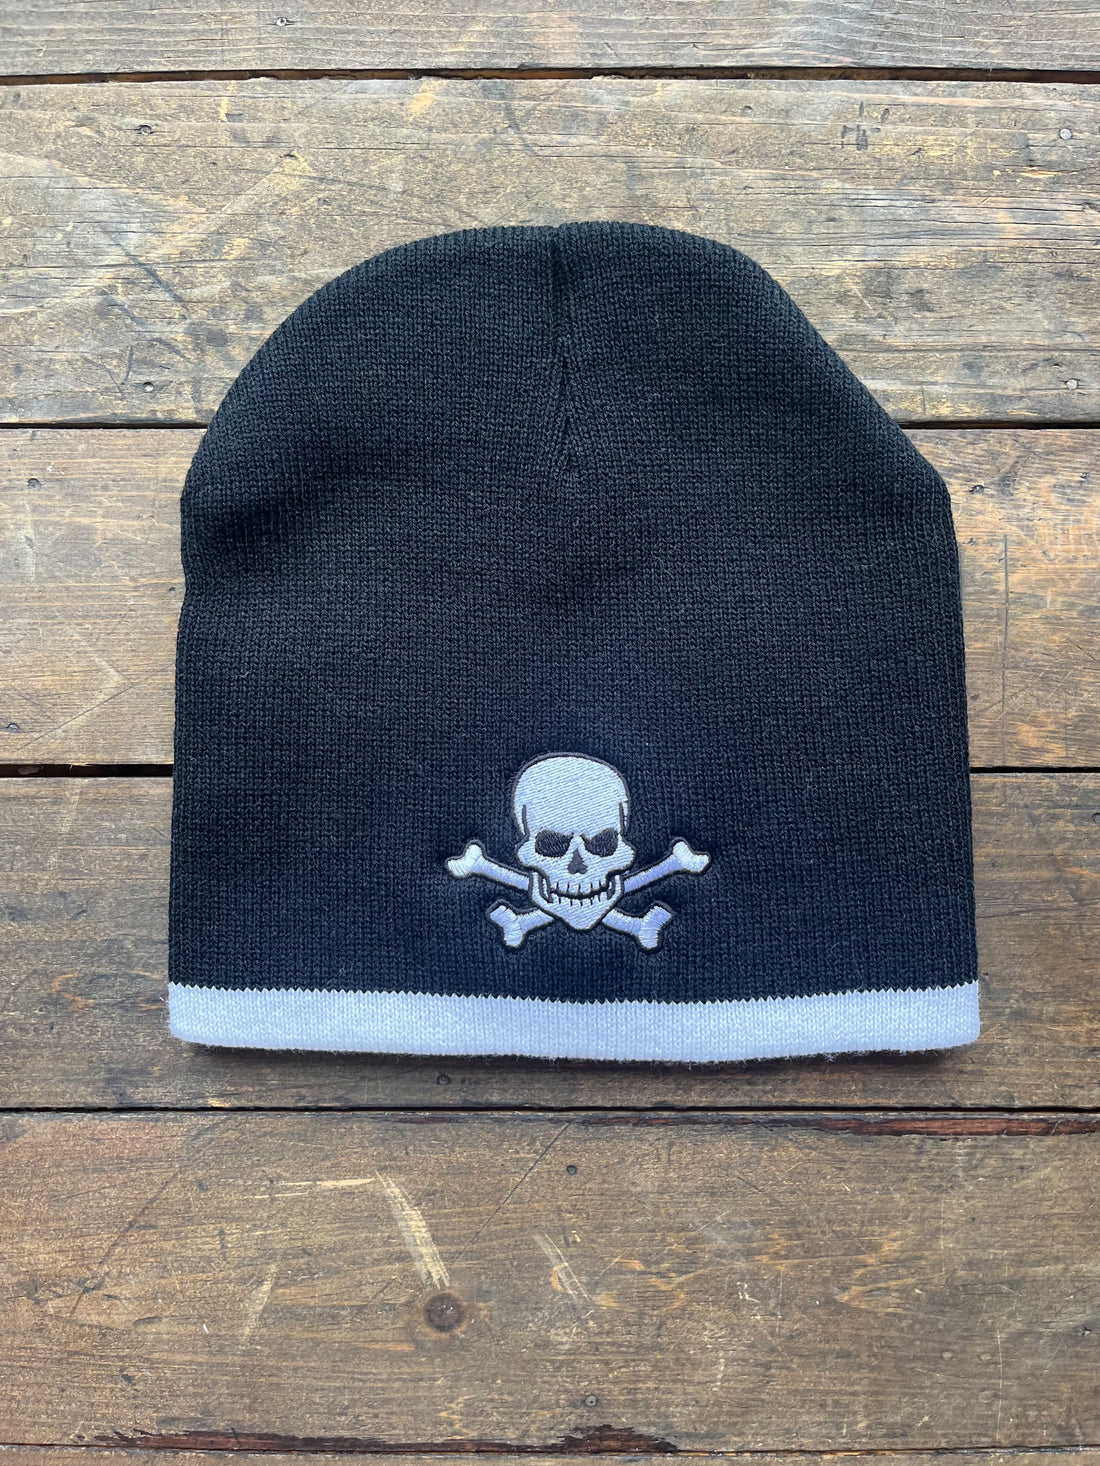 Pirate Knit Cap